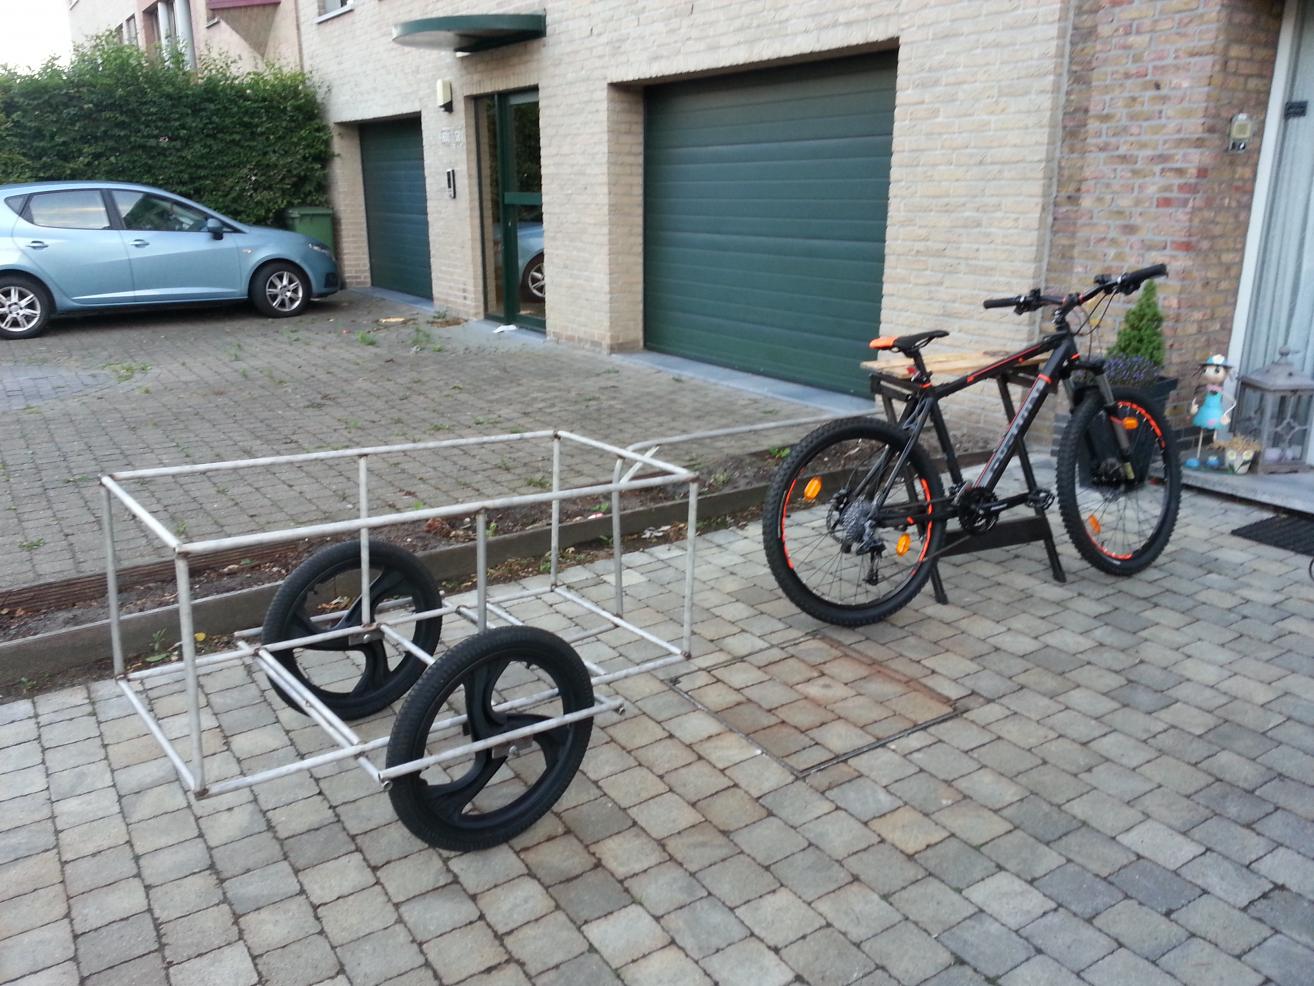 Kroniek een kopje knecht Mijn home made fietskar - Voertuigen - Preppers.nl Forum